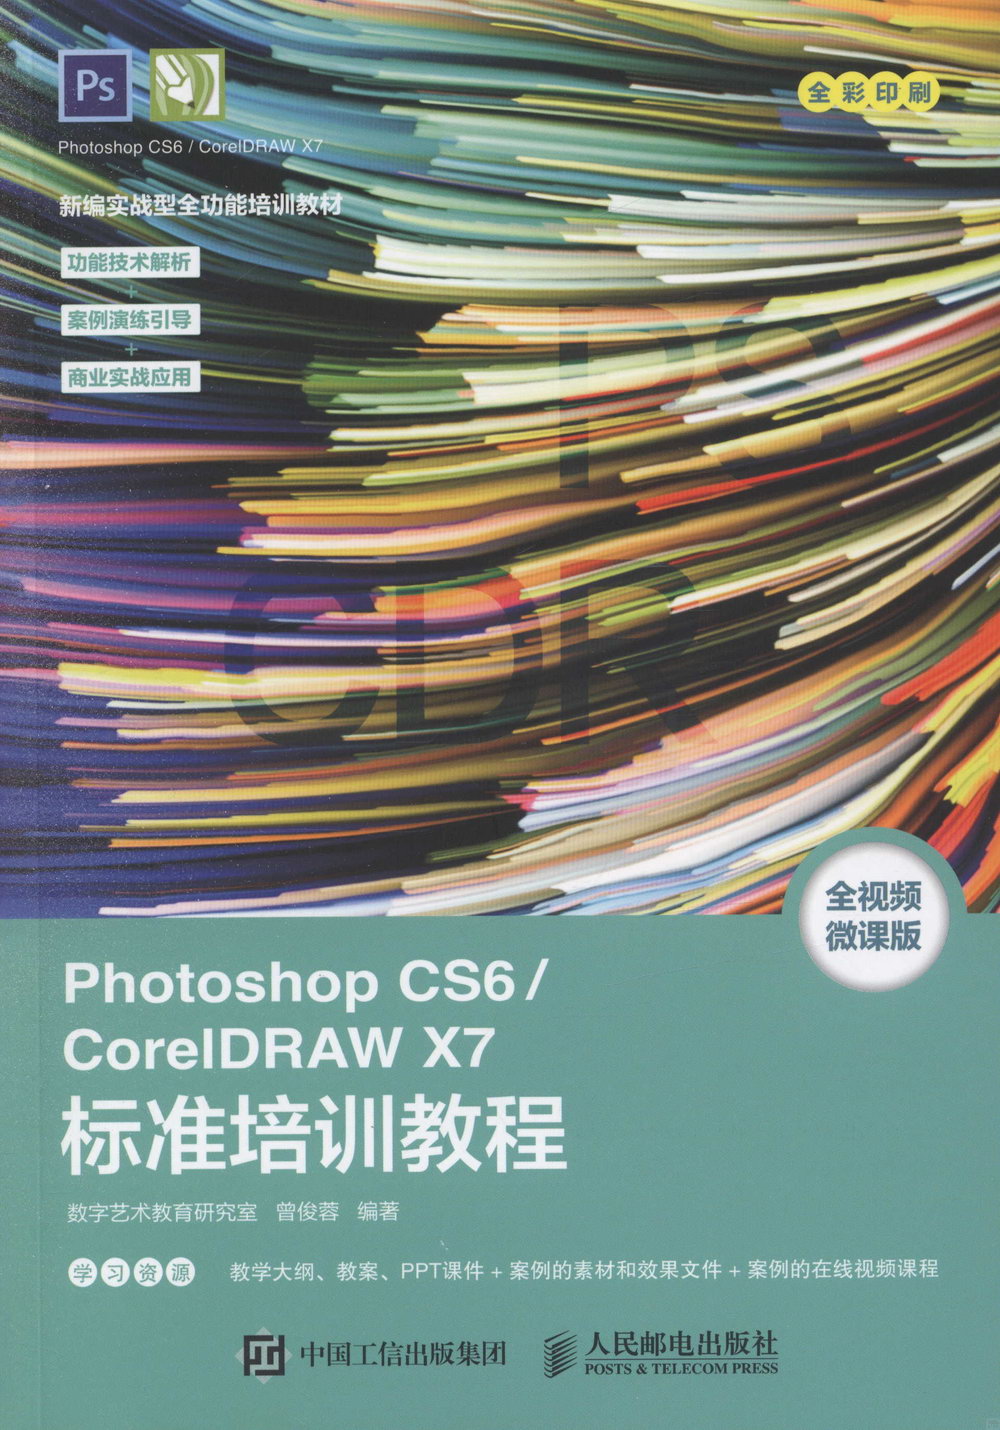 Photoshop CS6/CoreIDRAW X7標準培訓教程